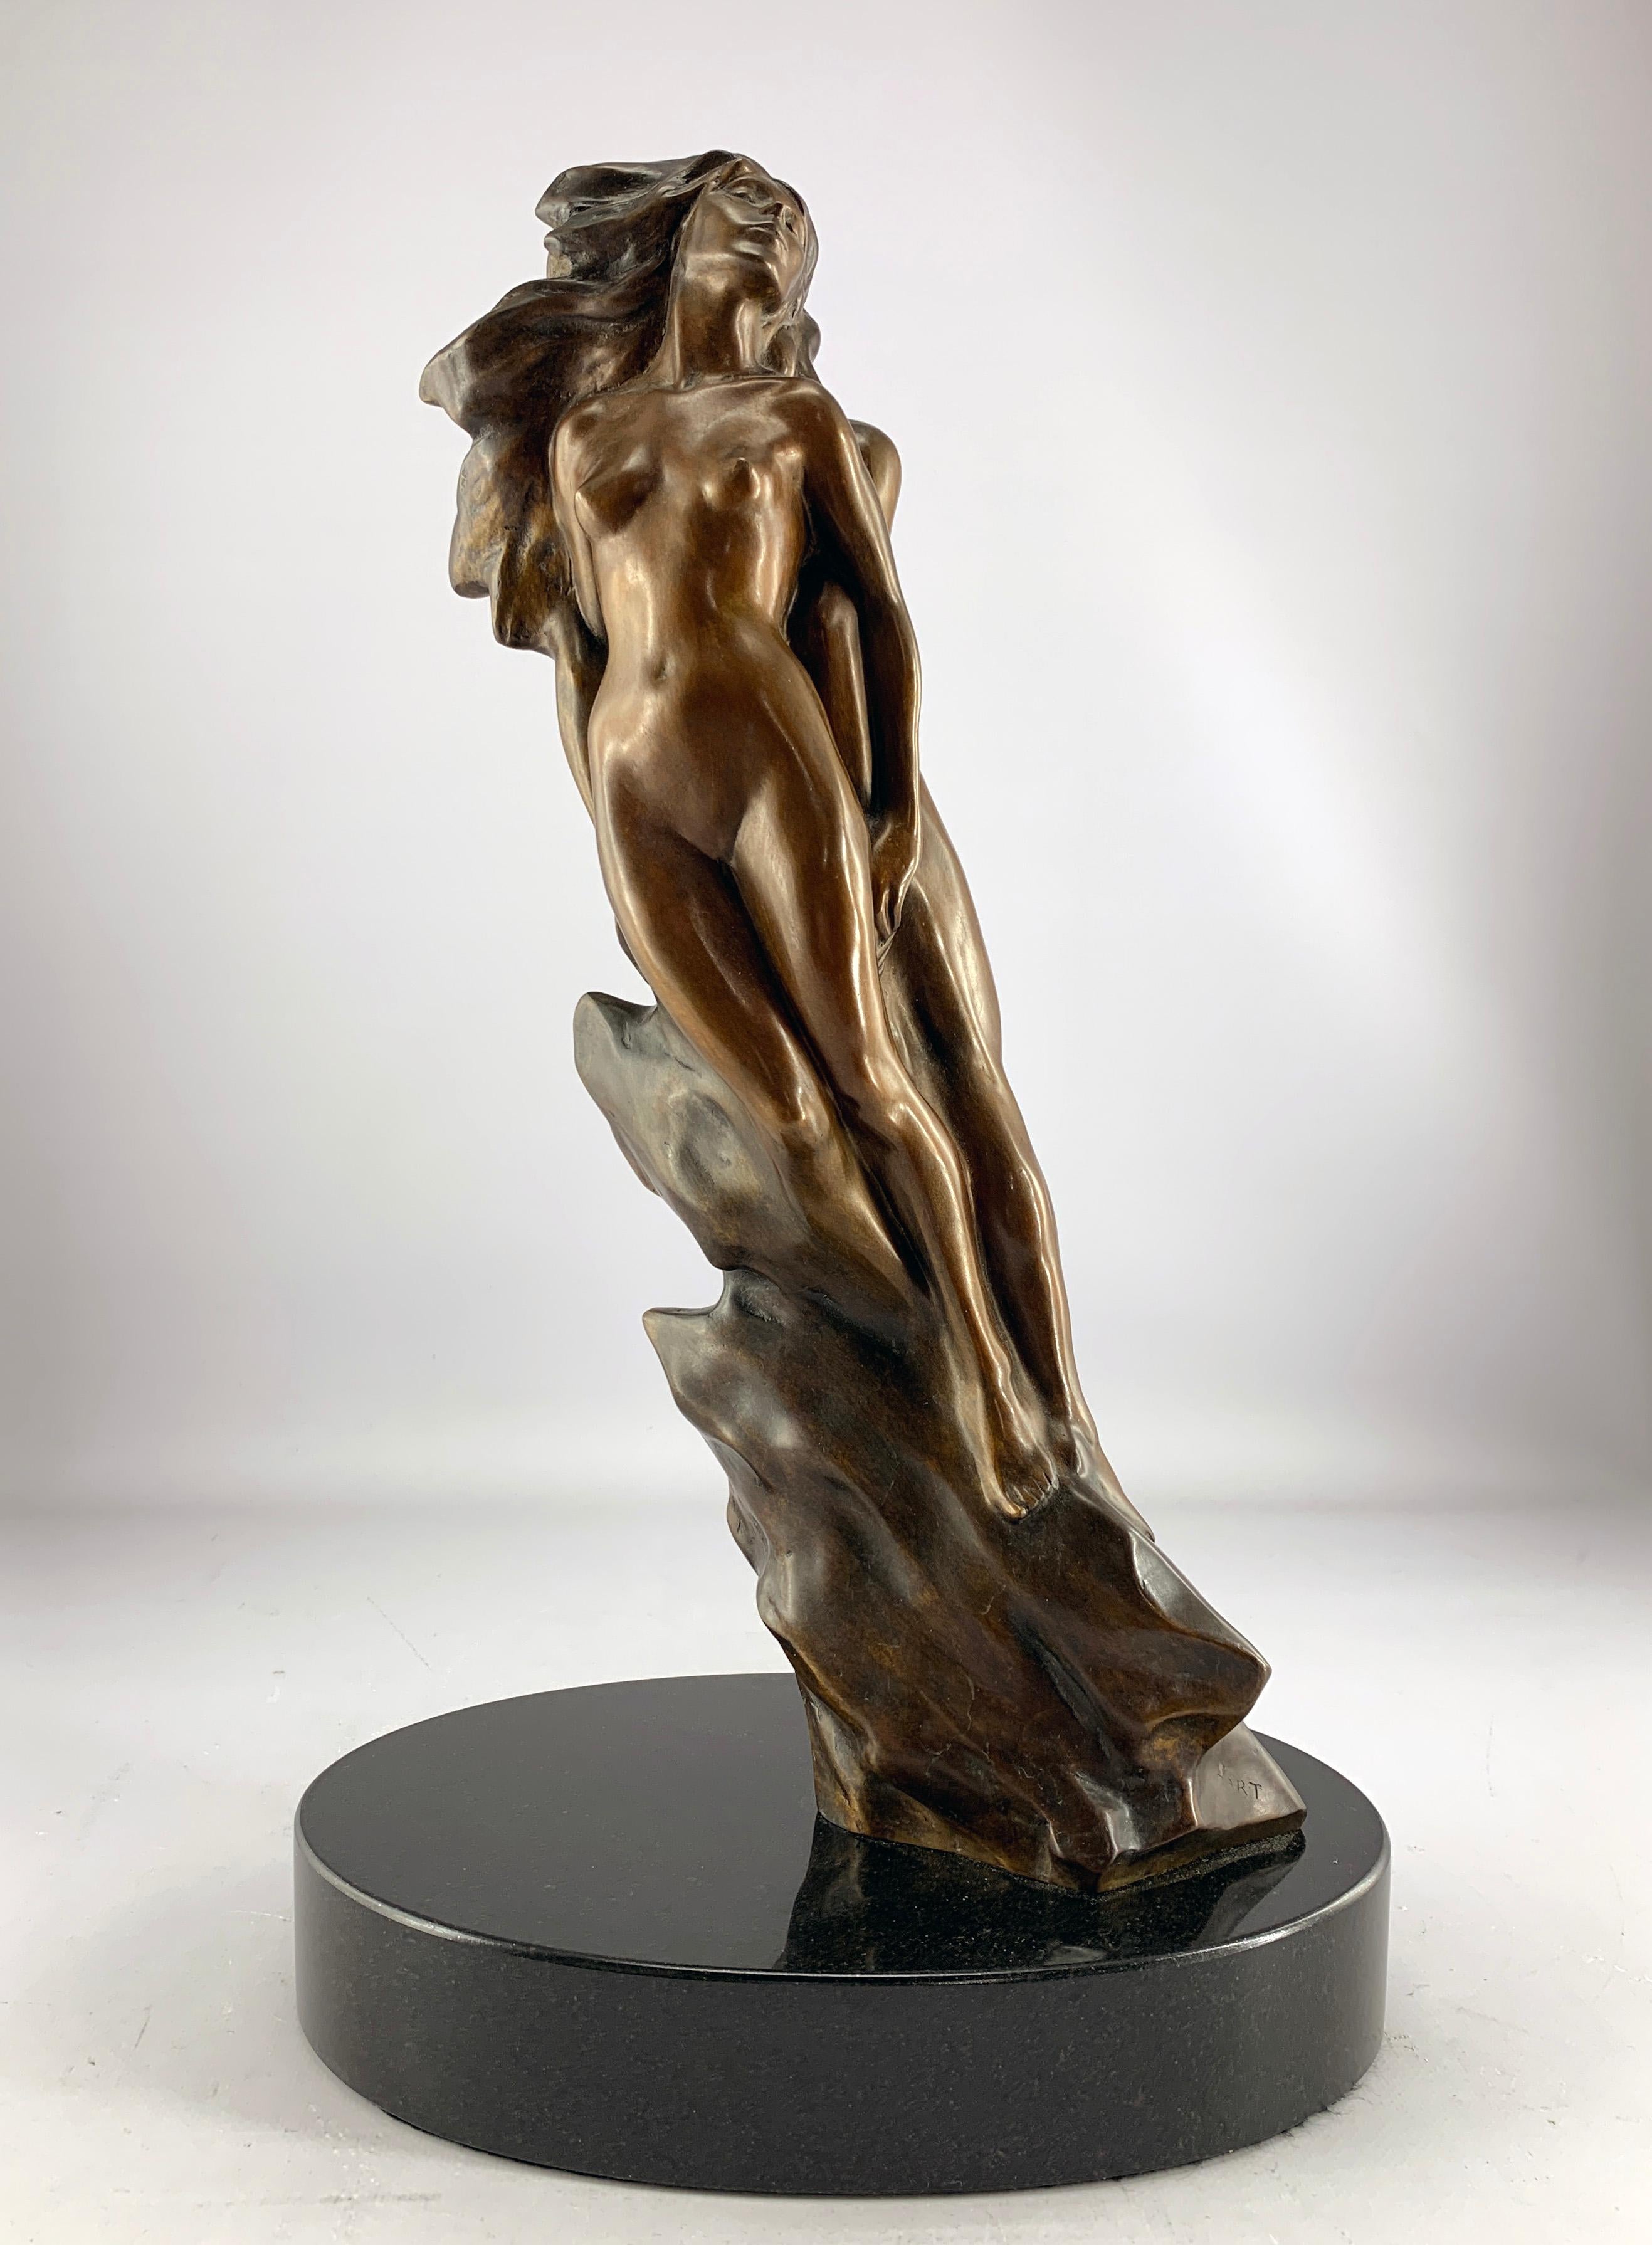 "Union" de Frederick Hart est une sculpture figurative en bronze de figure féminine et masculine dont le numéro d'édition est 299/350.  

Inspiré des sculptures de la création de la cathédrale nationale de Washington, Union est un chant sacré de